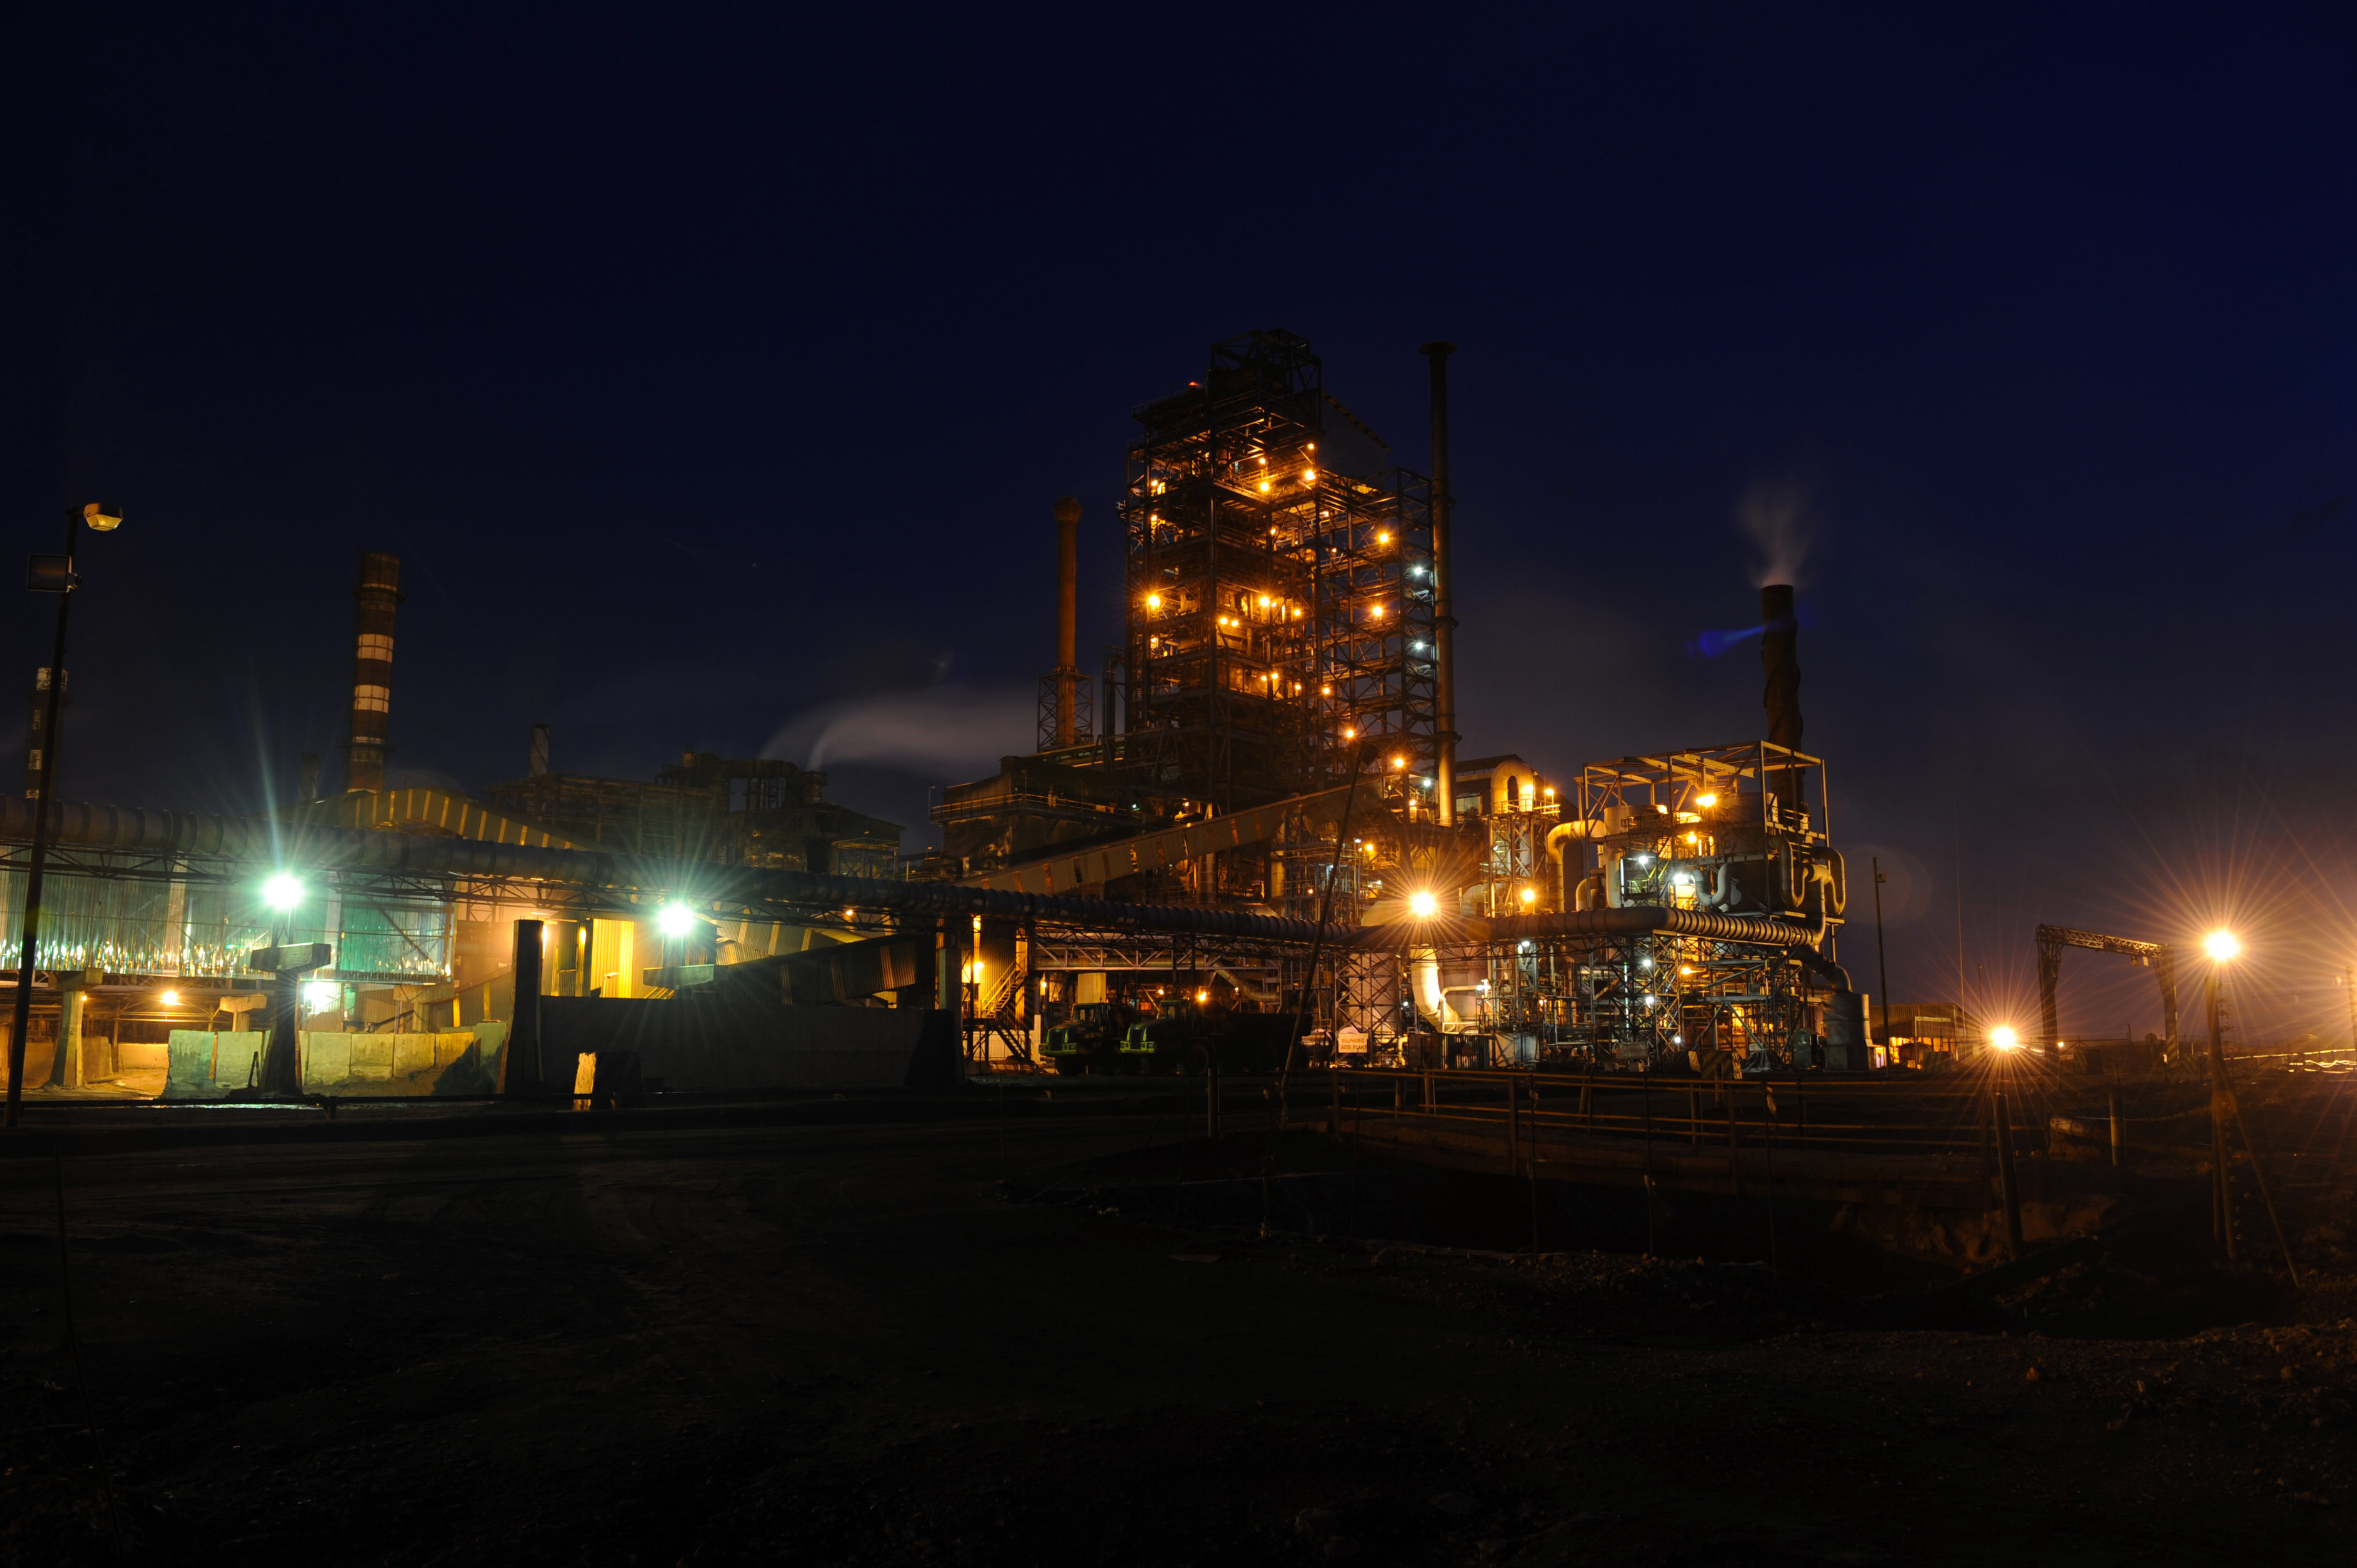 Night View of Mopani's Mufulira Smelter